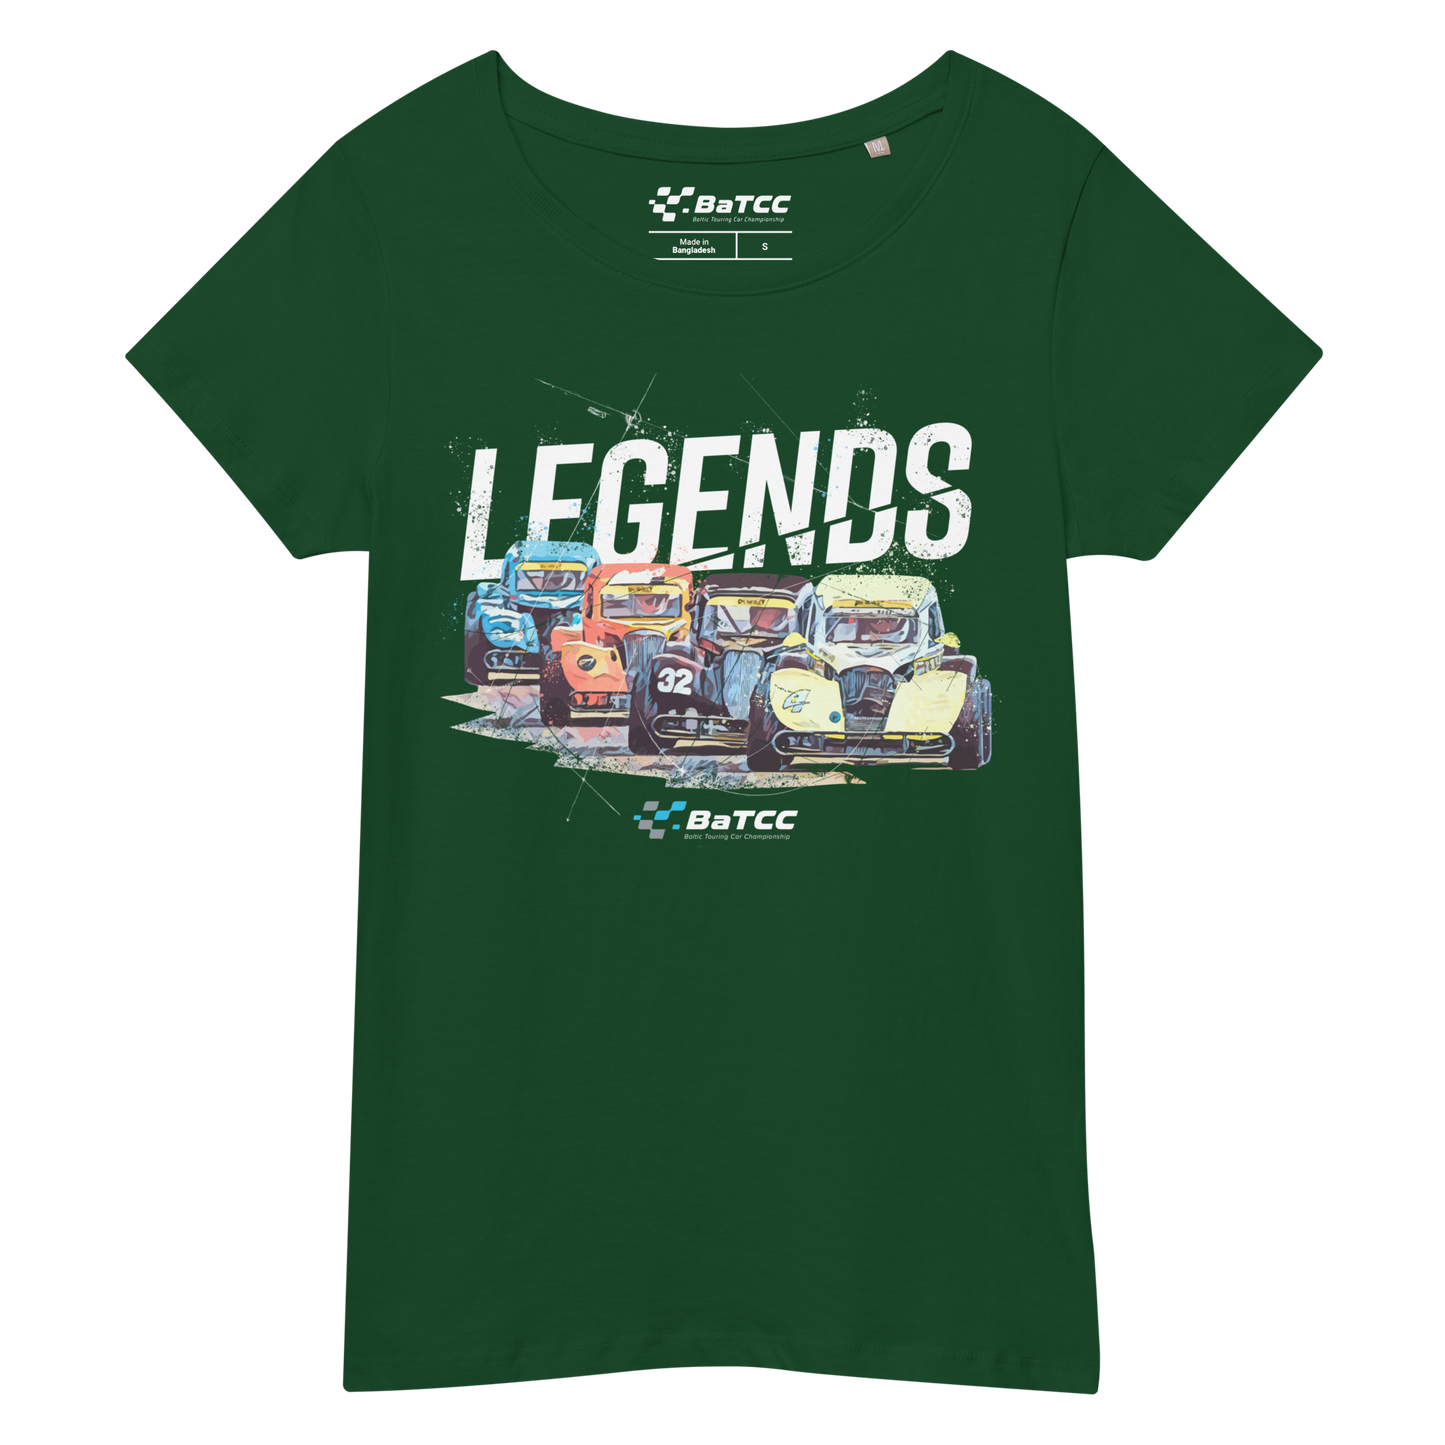 Legends Car Racing Women’s t-shirt